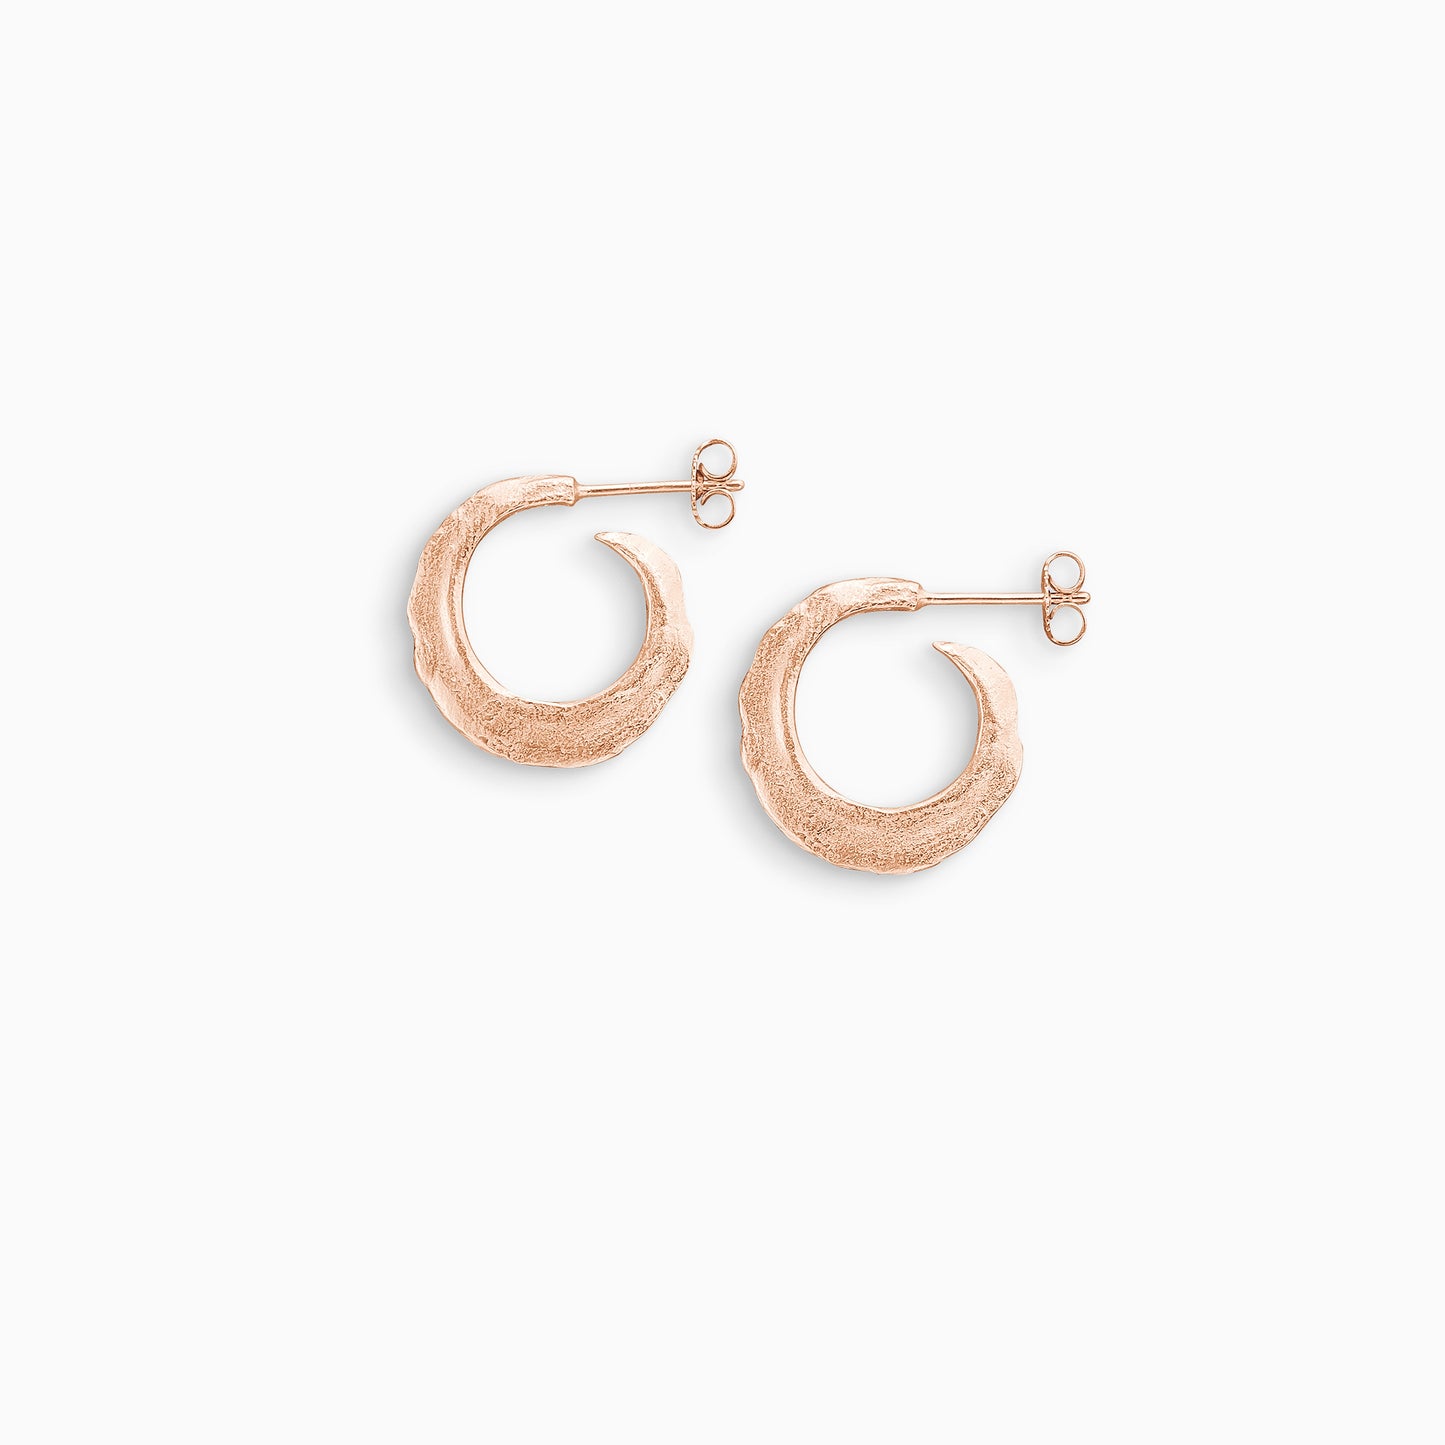 Romany small hoop earrings